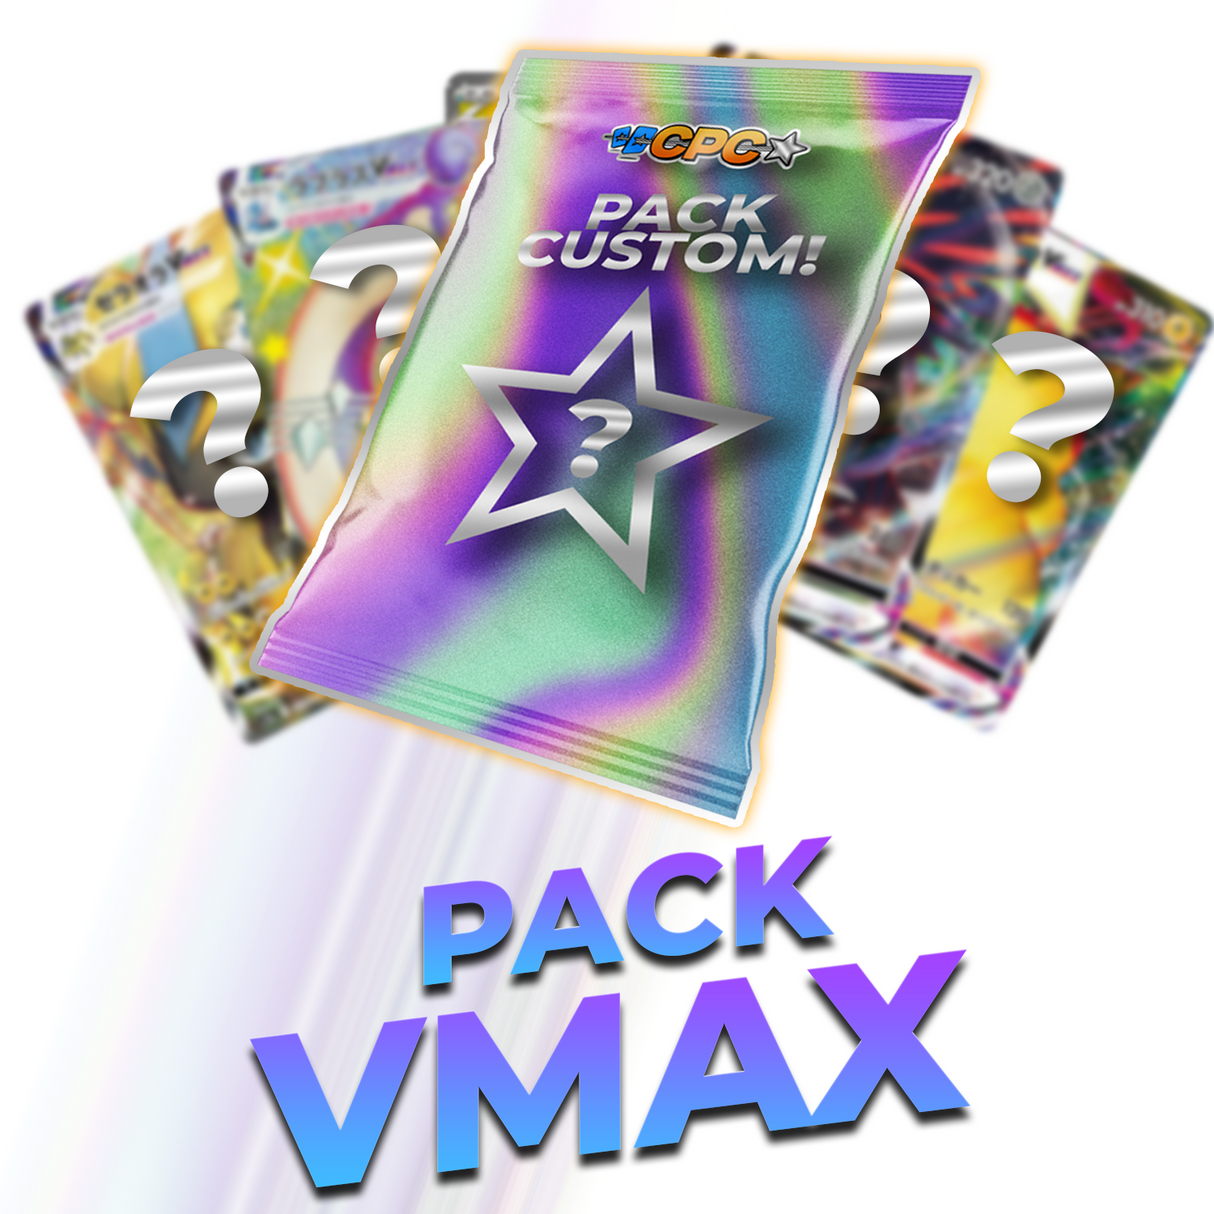 VMAX Pack C.P.C